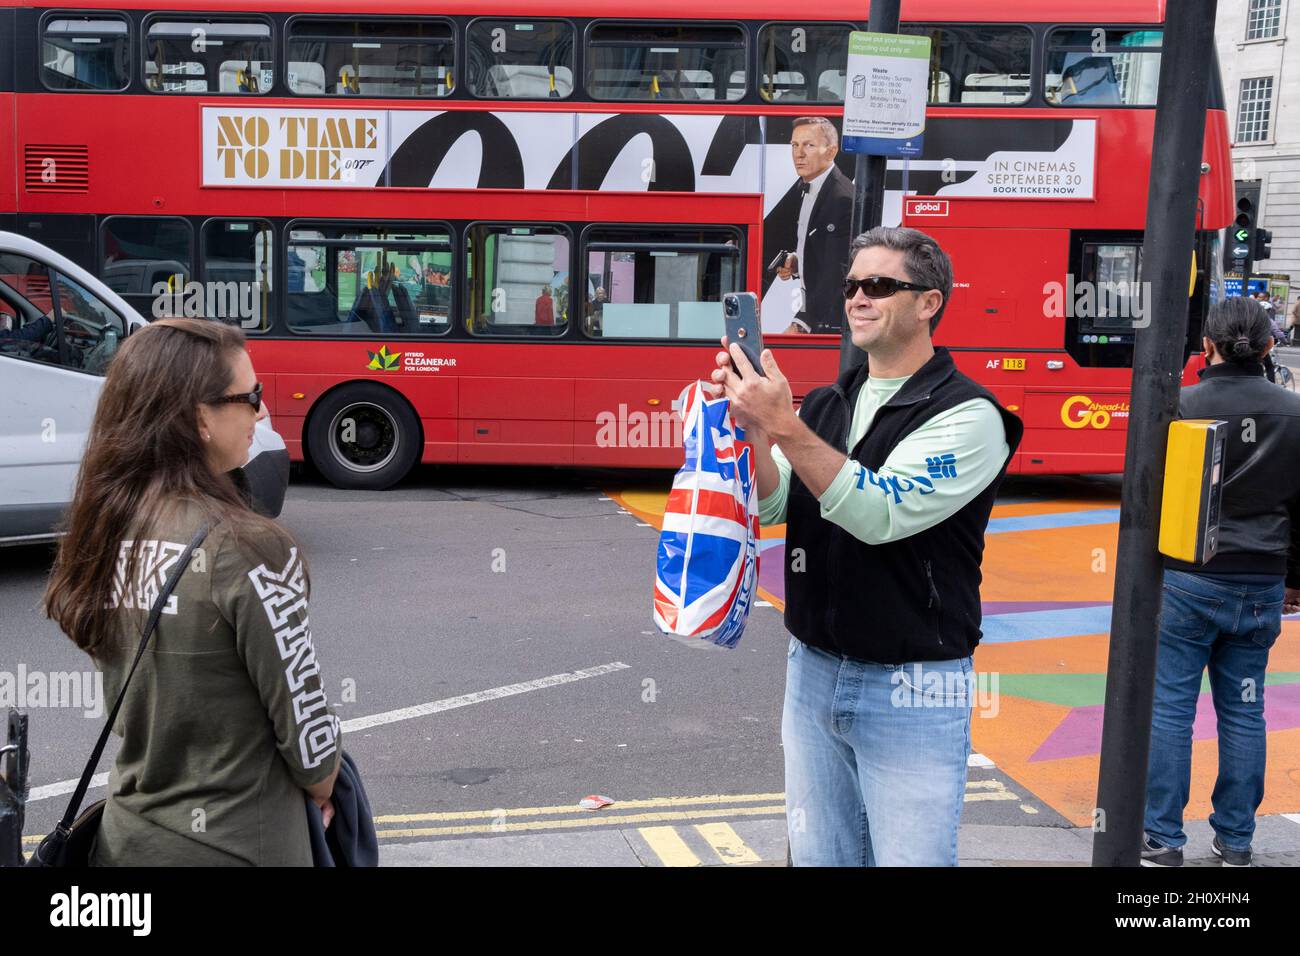 Alors qu'un bus passe devant le mariage d'un panneau publicitaire pour le dernier James Bond « No Time to Die » avec Danial Craig, un visiteur du West End prend une photo d'une femme, le 14 octobre 2021, à Westminster, Londres,Angleterre. Banque D'Images